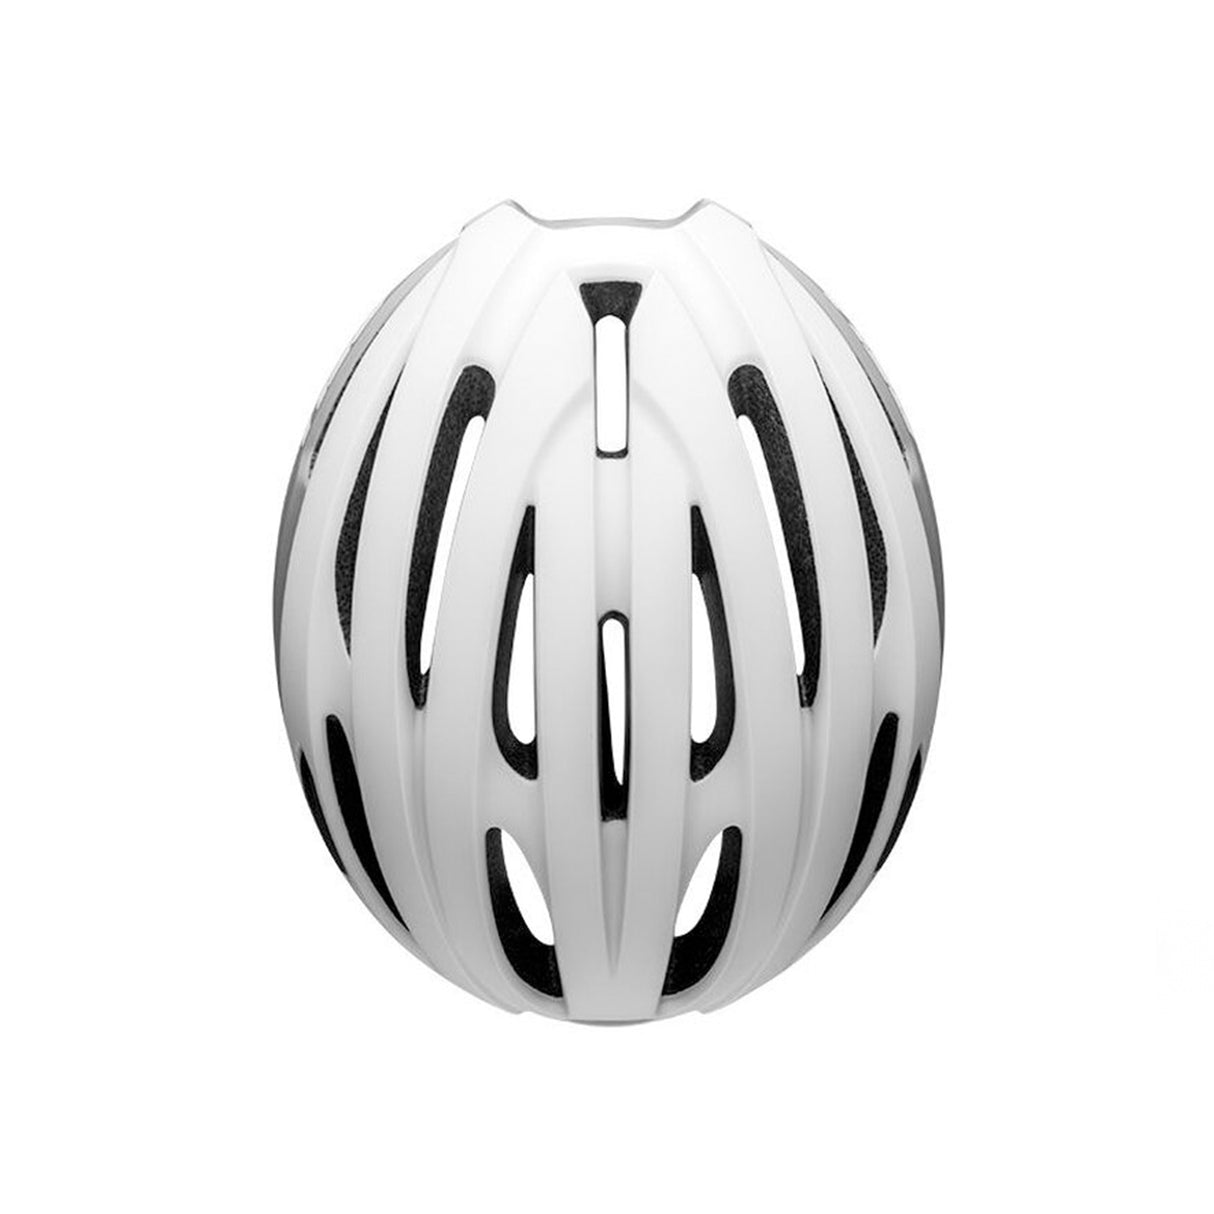 Bell Avenue MIPS Road Helmet